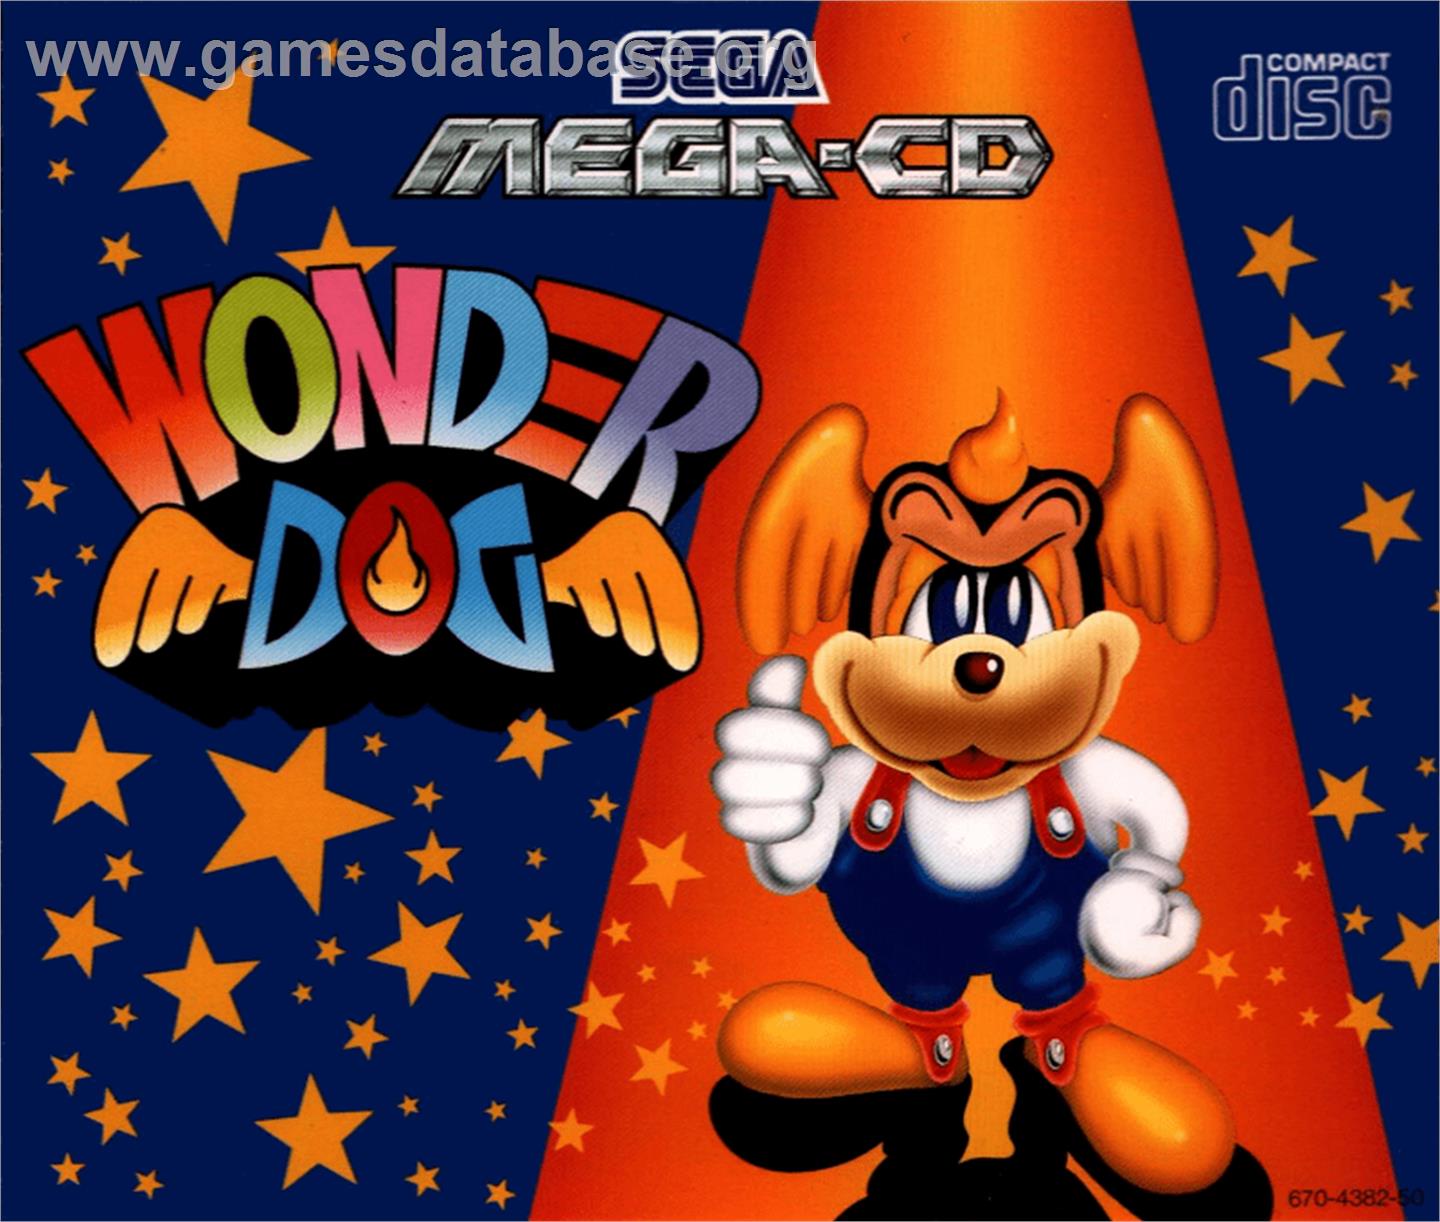 Wonder Dog - Sega CD - Artwork - Box